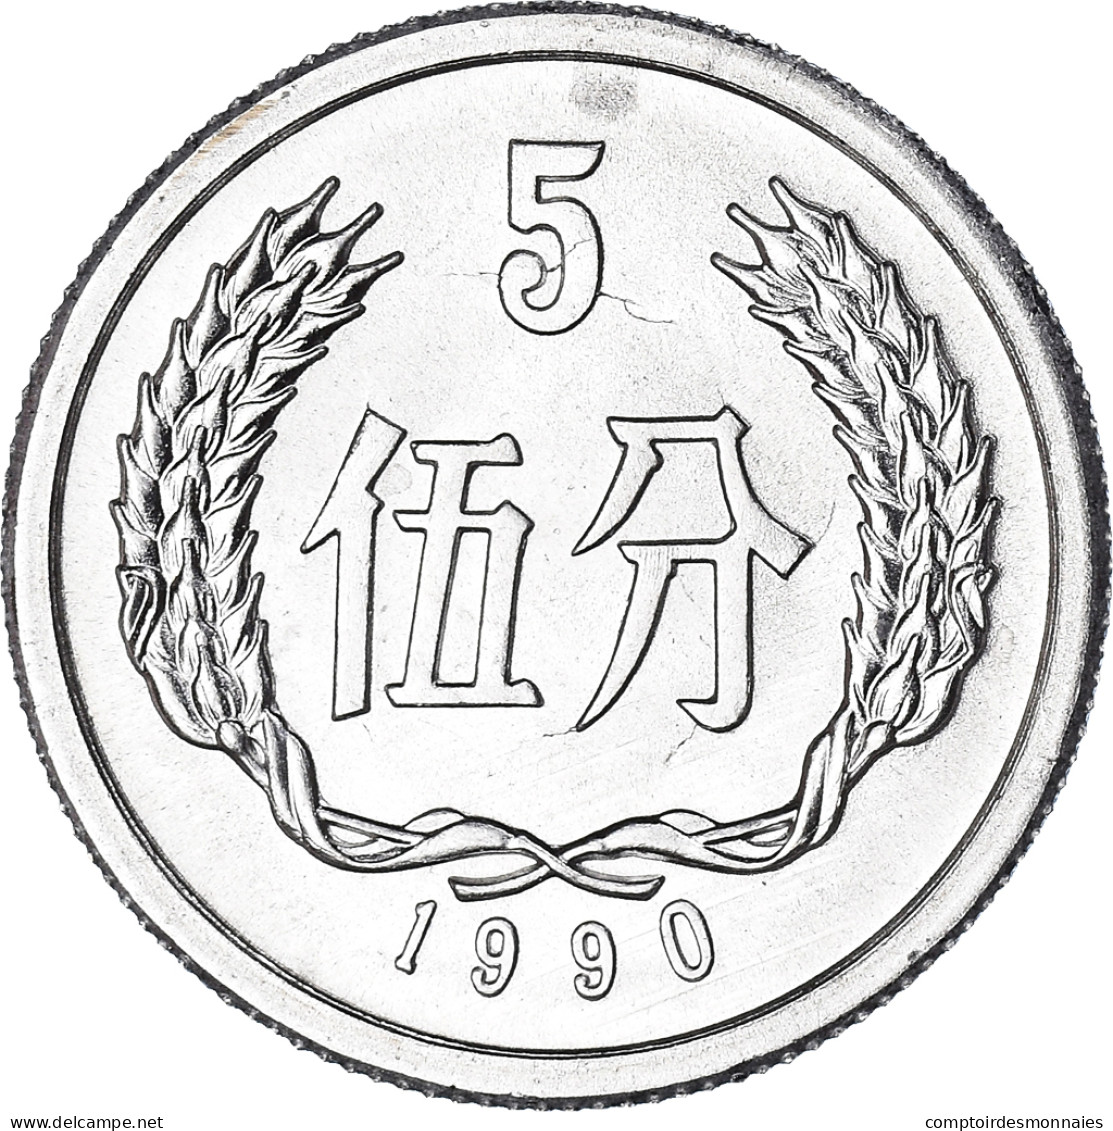 Monnaie, République Populaire De Chine, 5 Fen, 1990, SPL, Aluminium, KM:3 - China